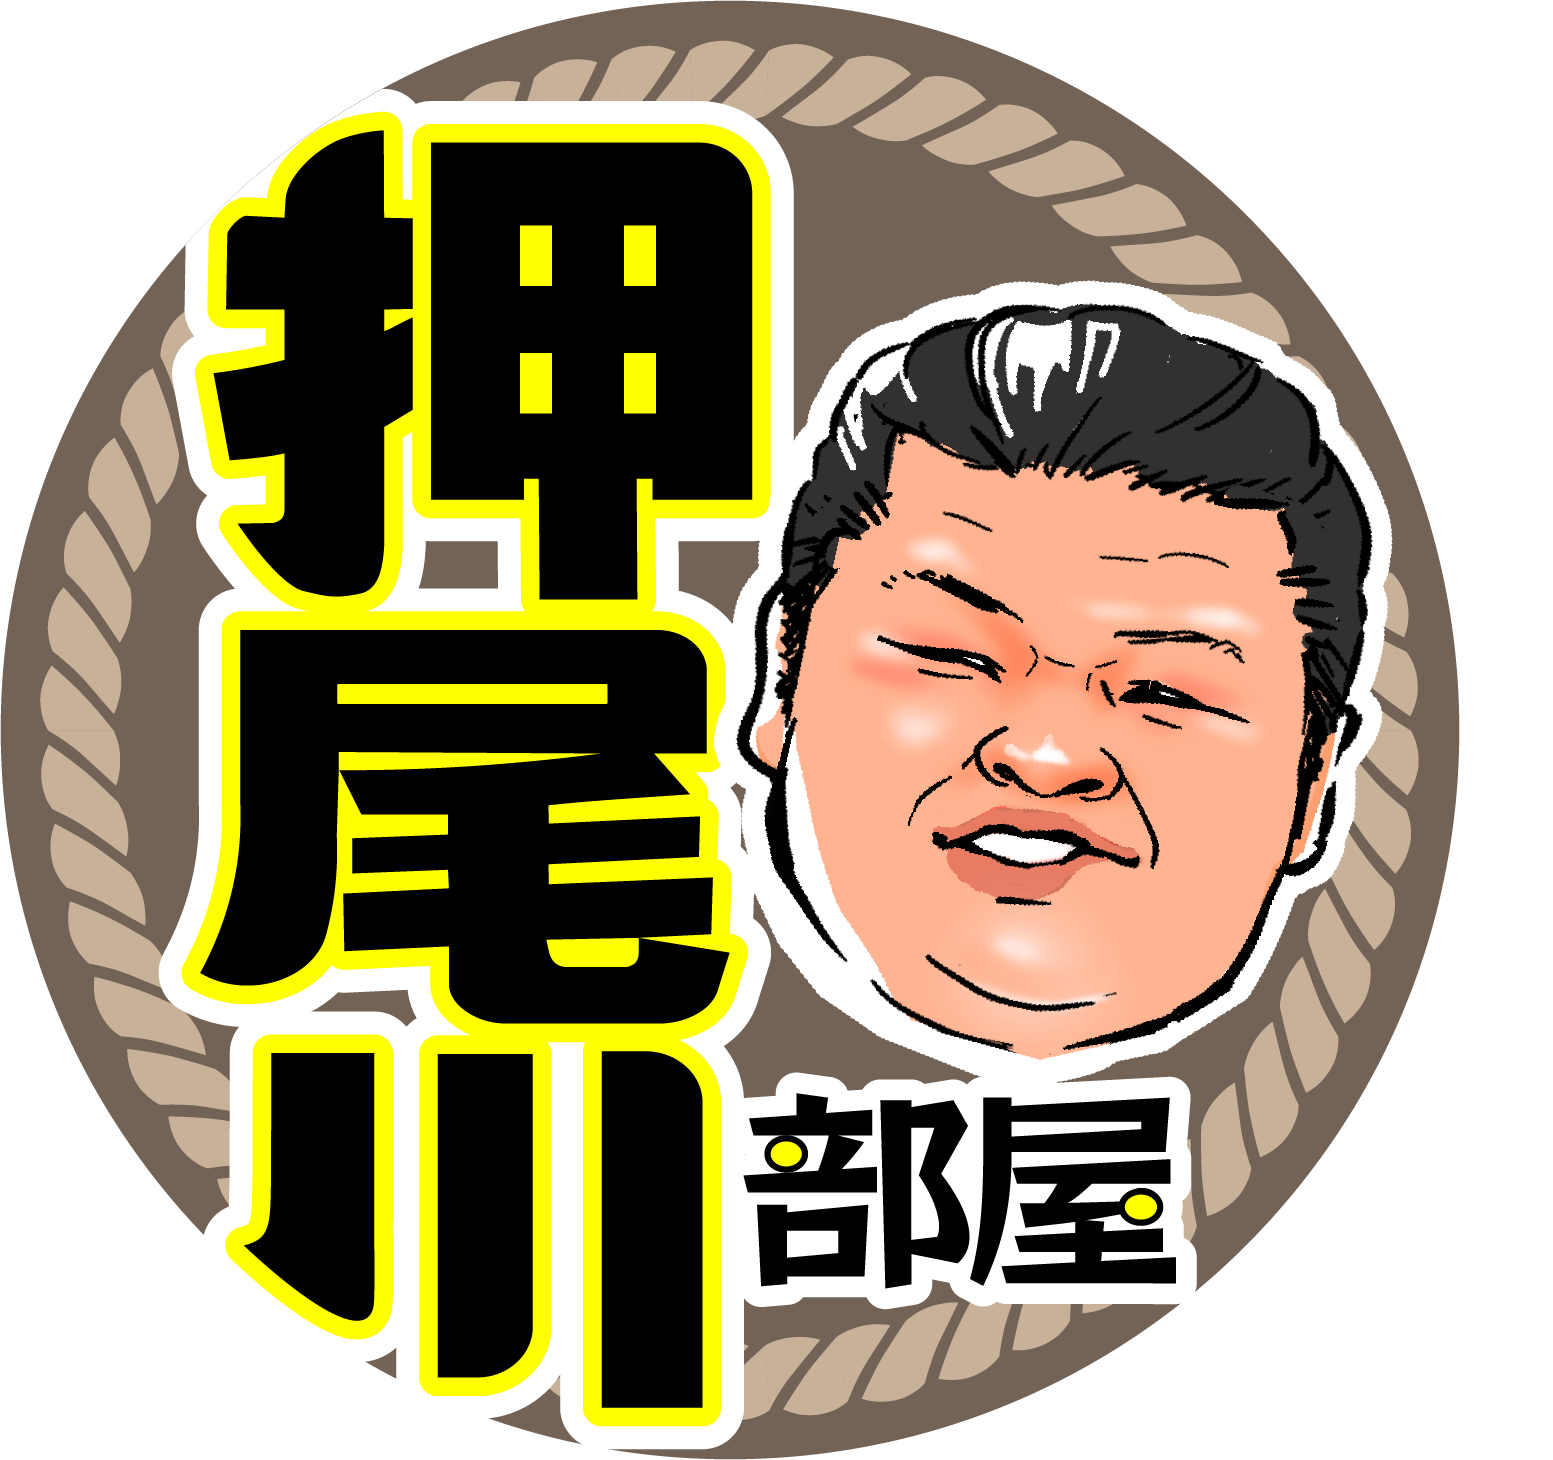 押尾川部屋がTikTokチャンネルを開設　
部屋を構える東京・墨田区を始め地域に愛される相撲部屋を目指す